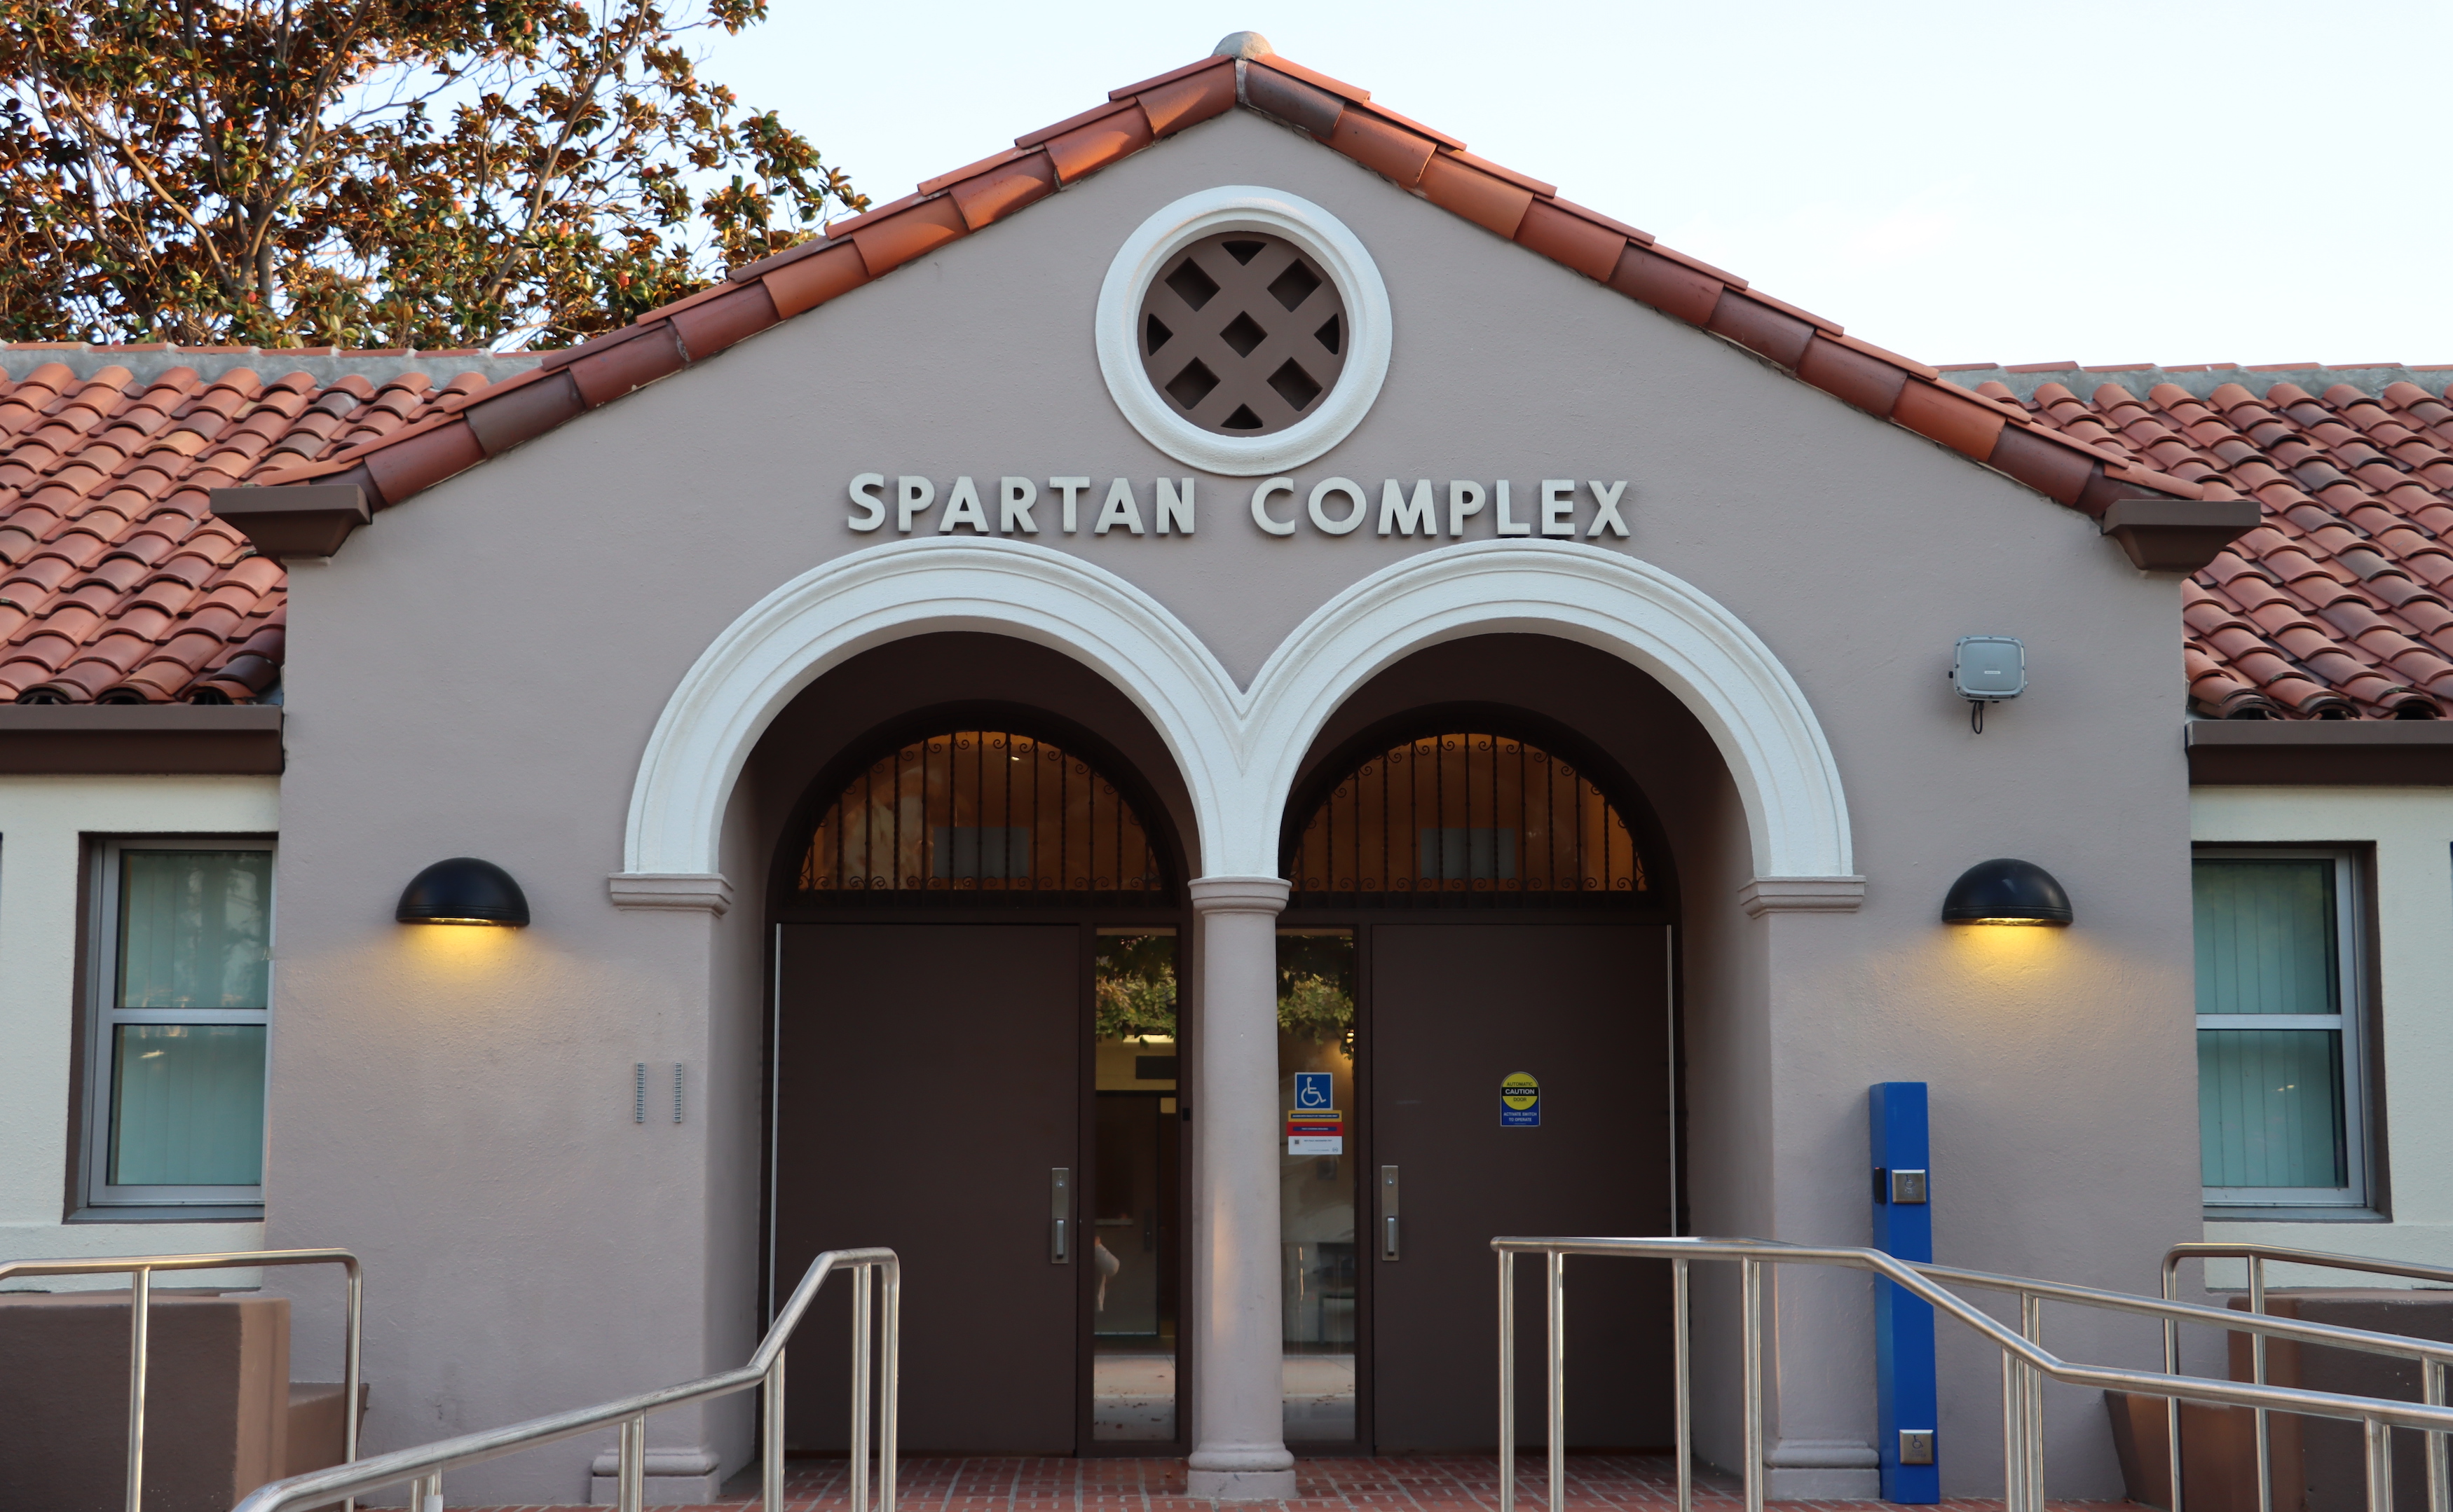 Spartan Complex Building